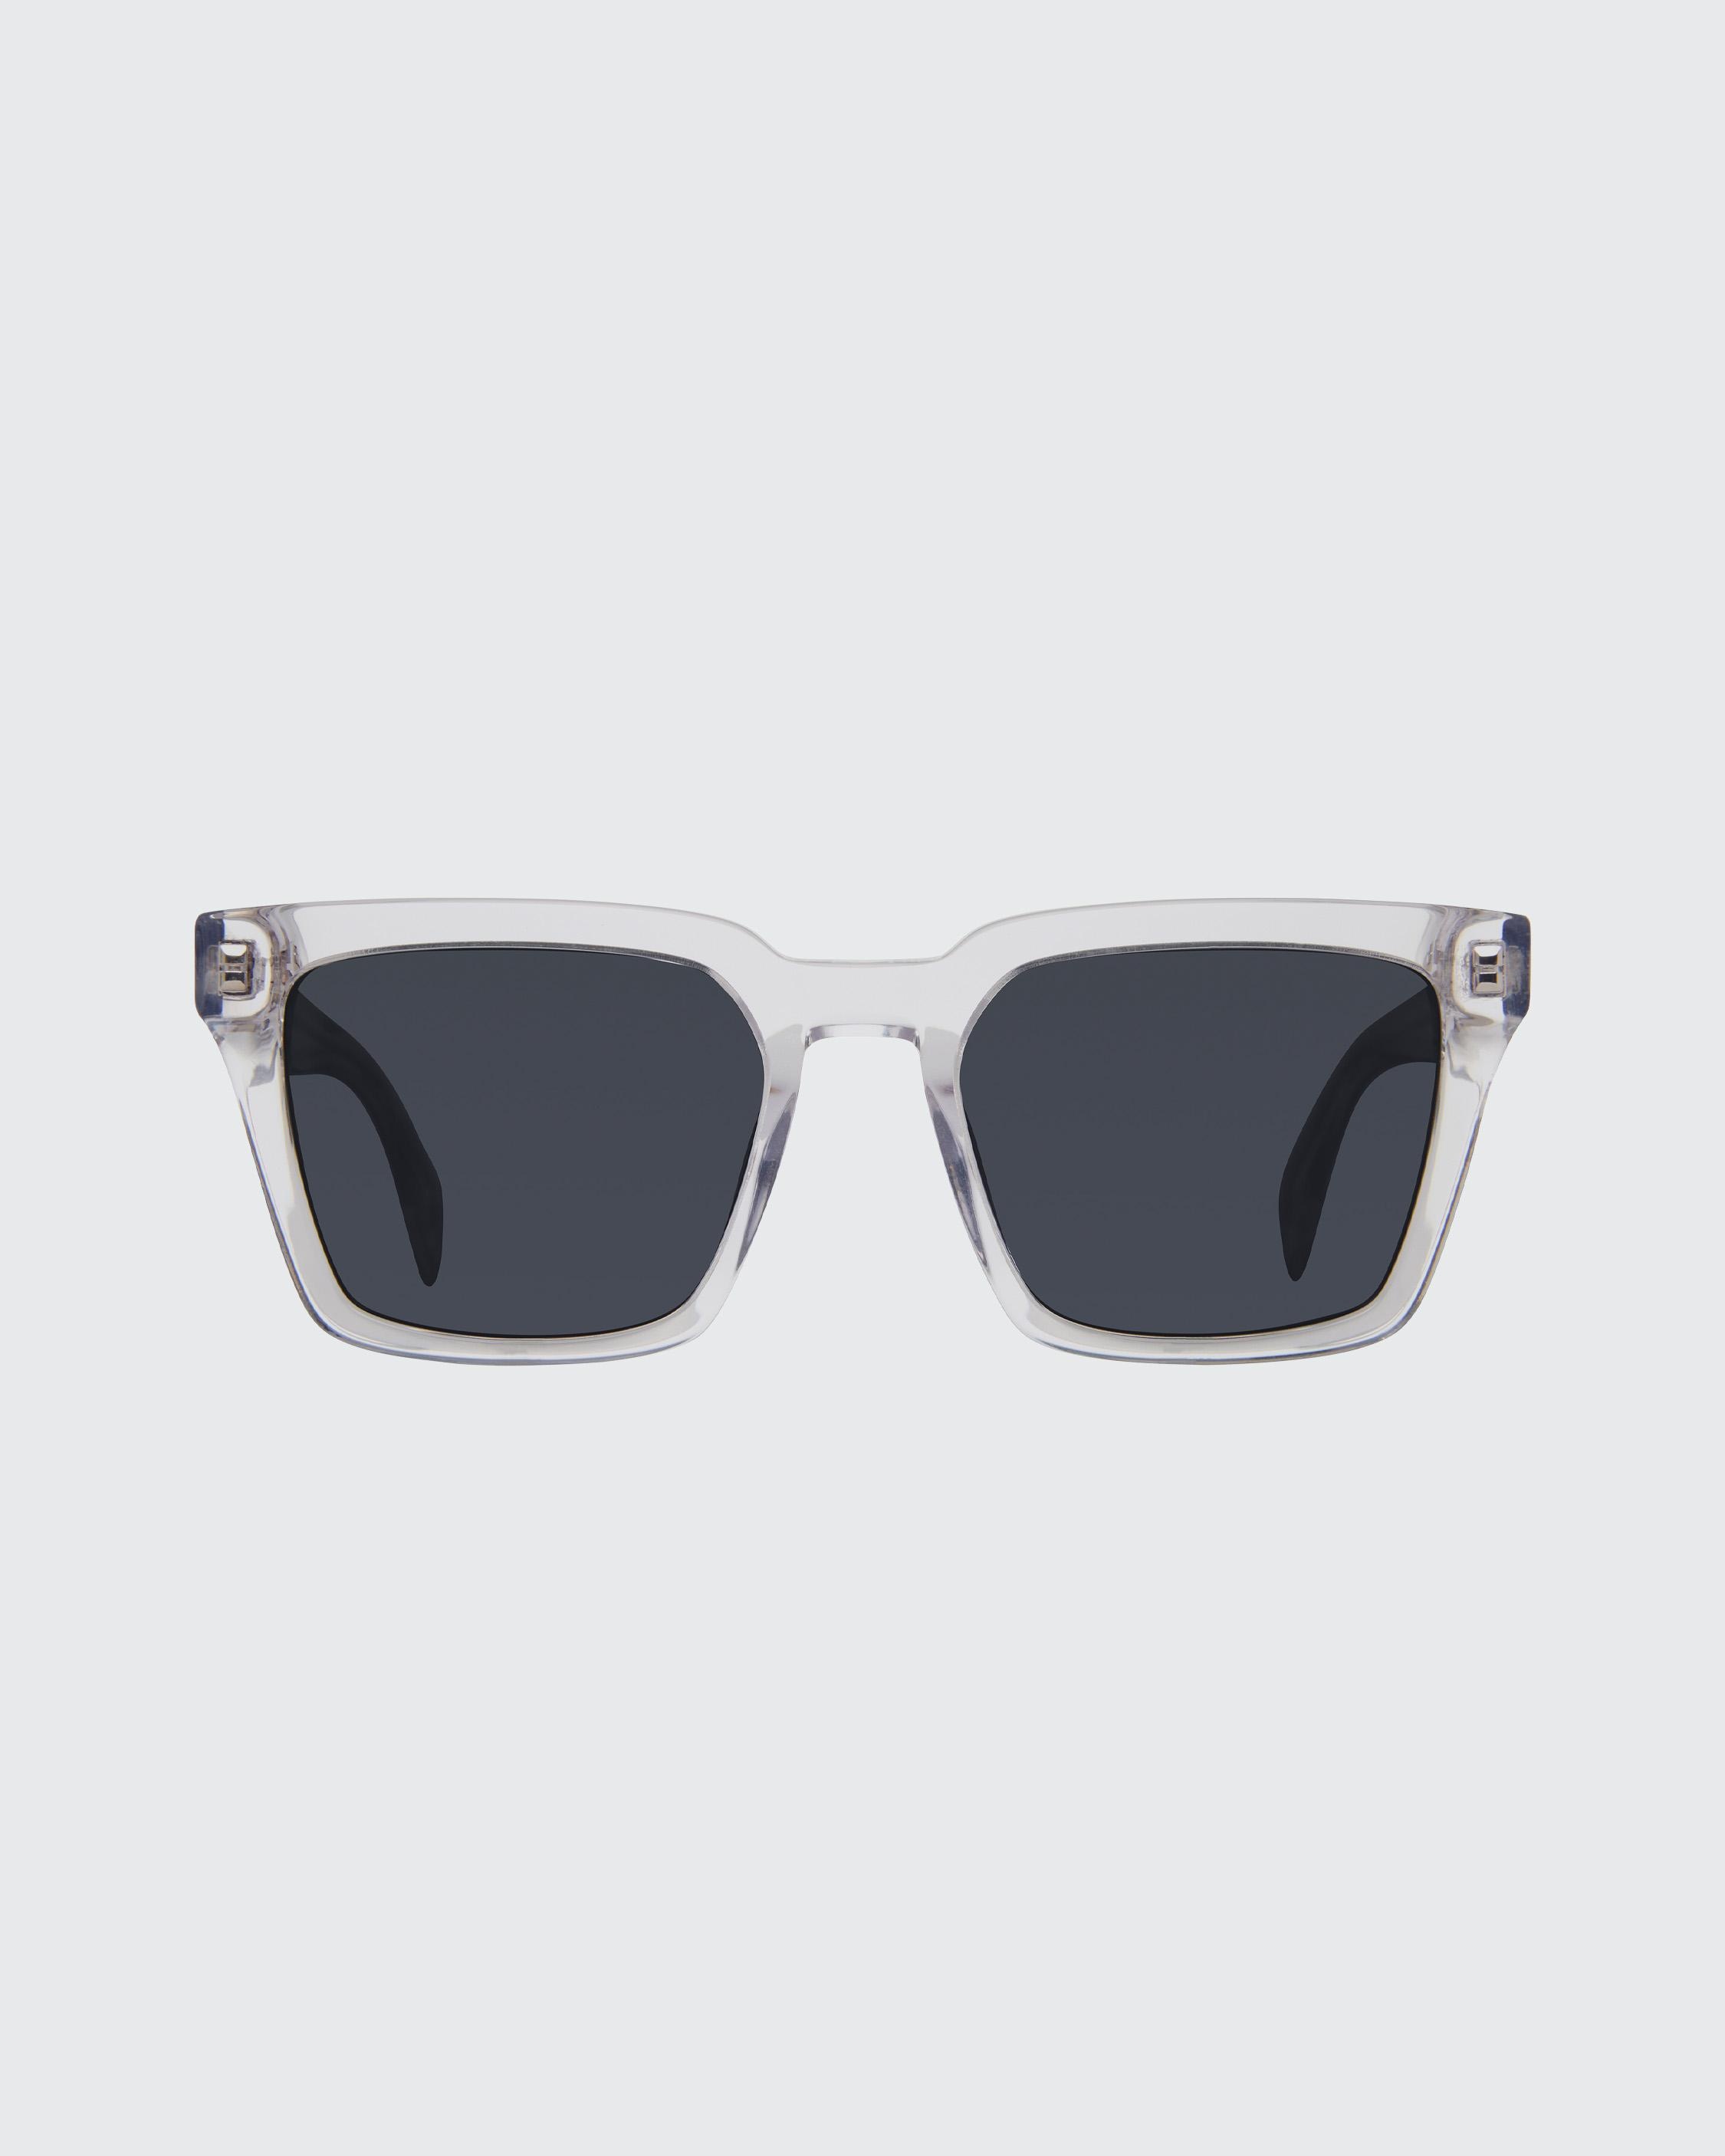 Zander
Square Sunglasses - 2